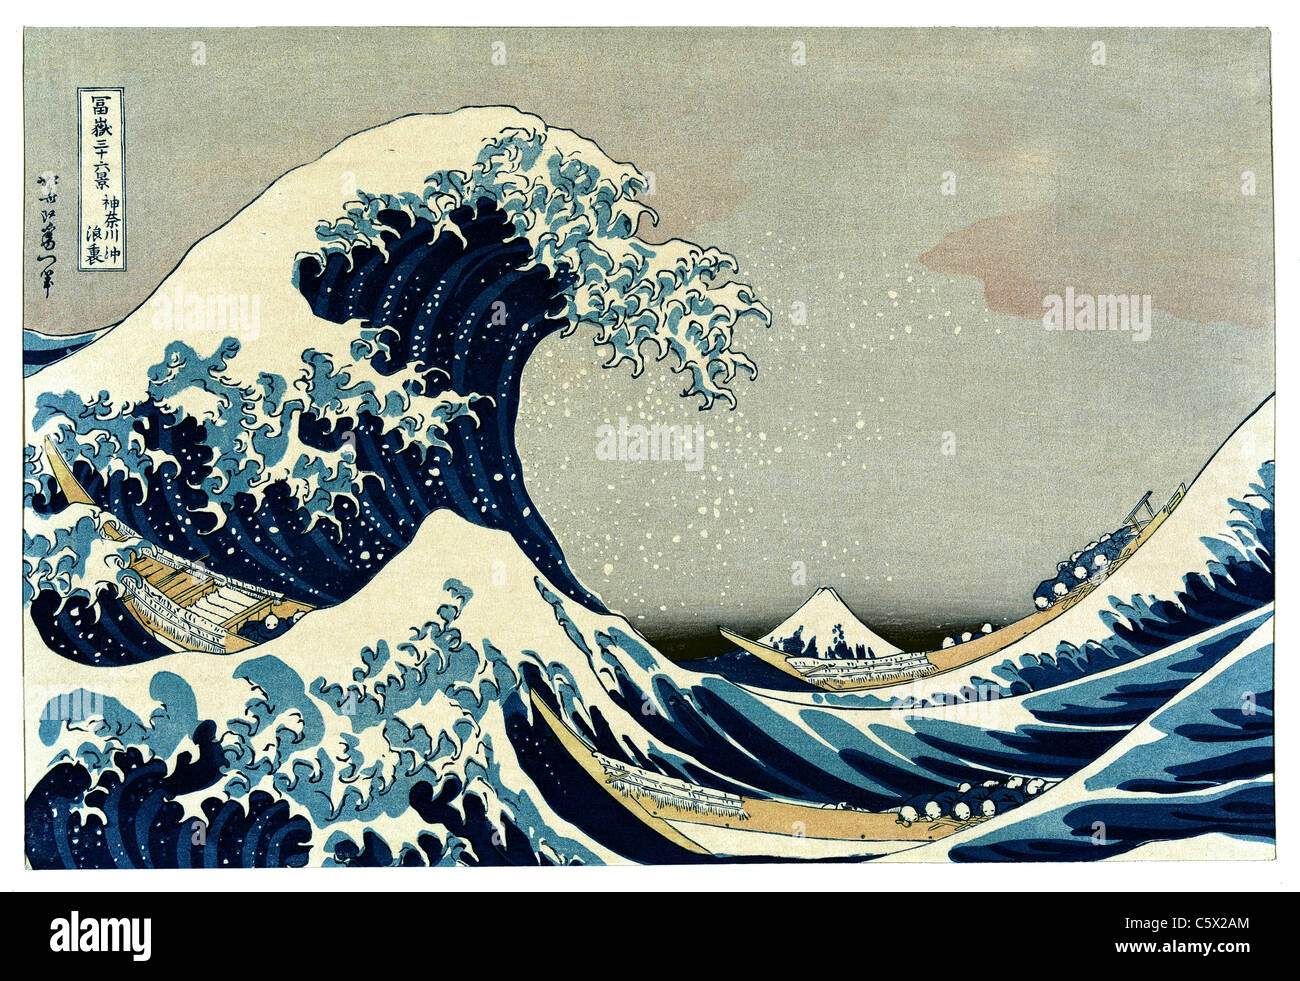 Die große Welle von Kanagawa von Katsushika Hokusai - Sehr hohe Qualität und Auflösung Stockfoto